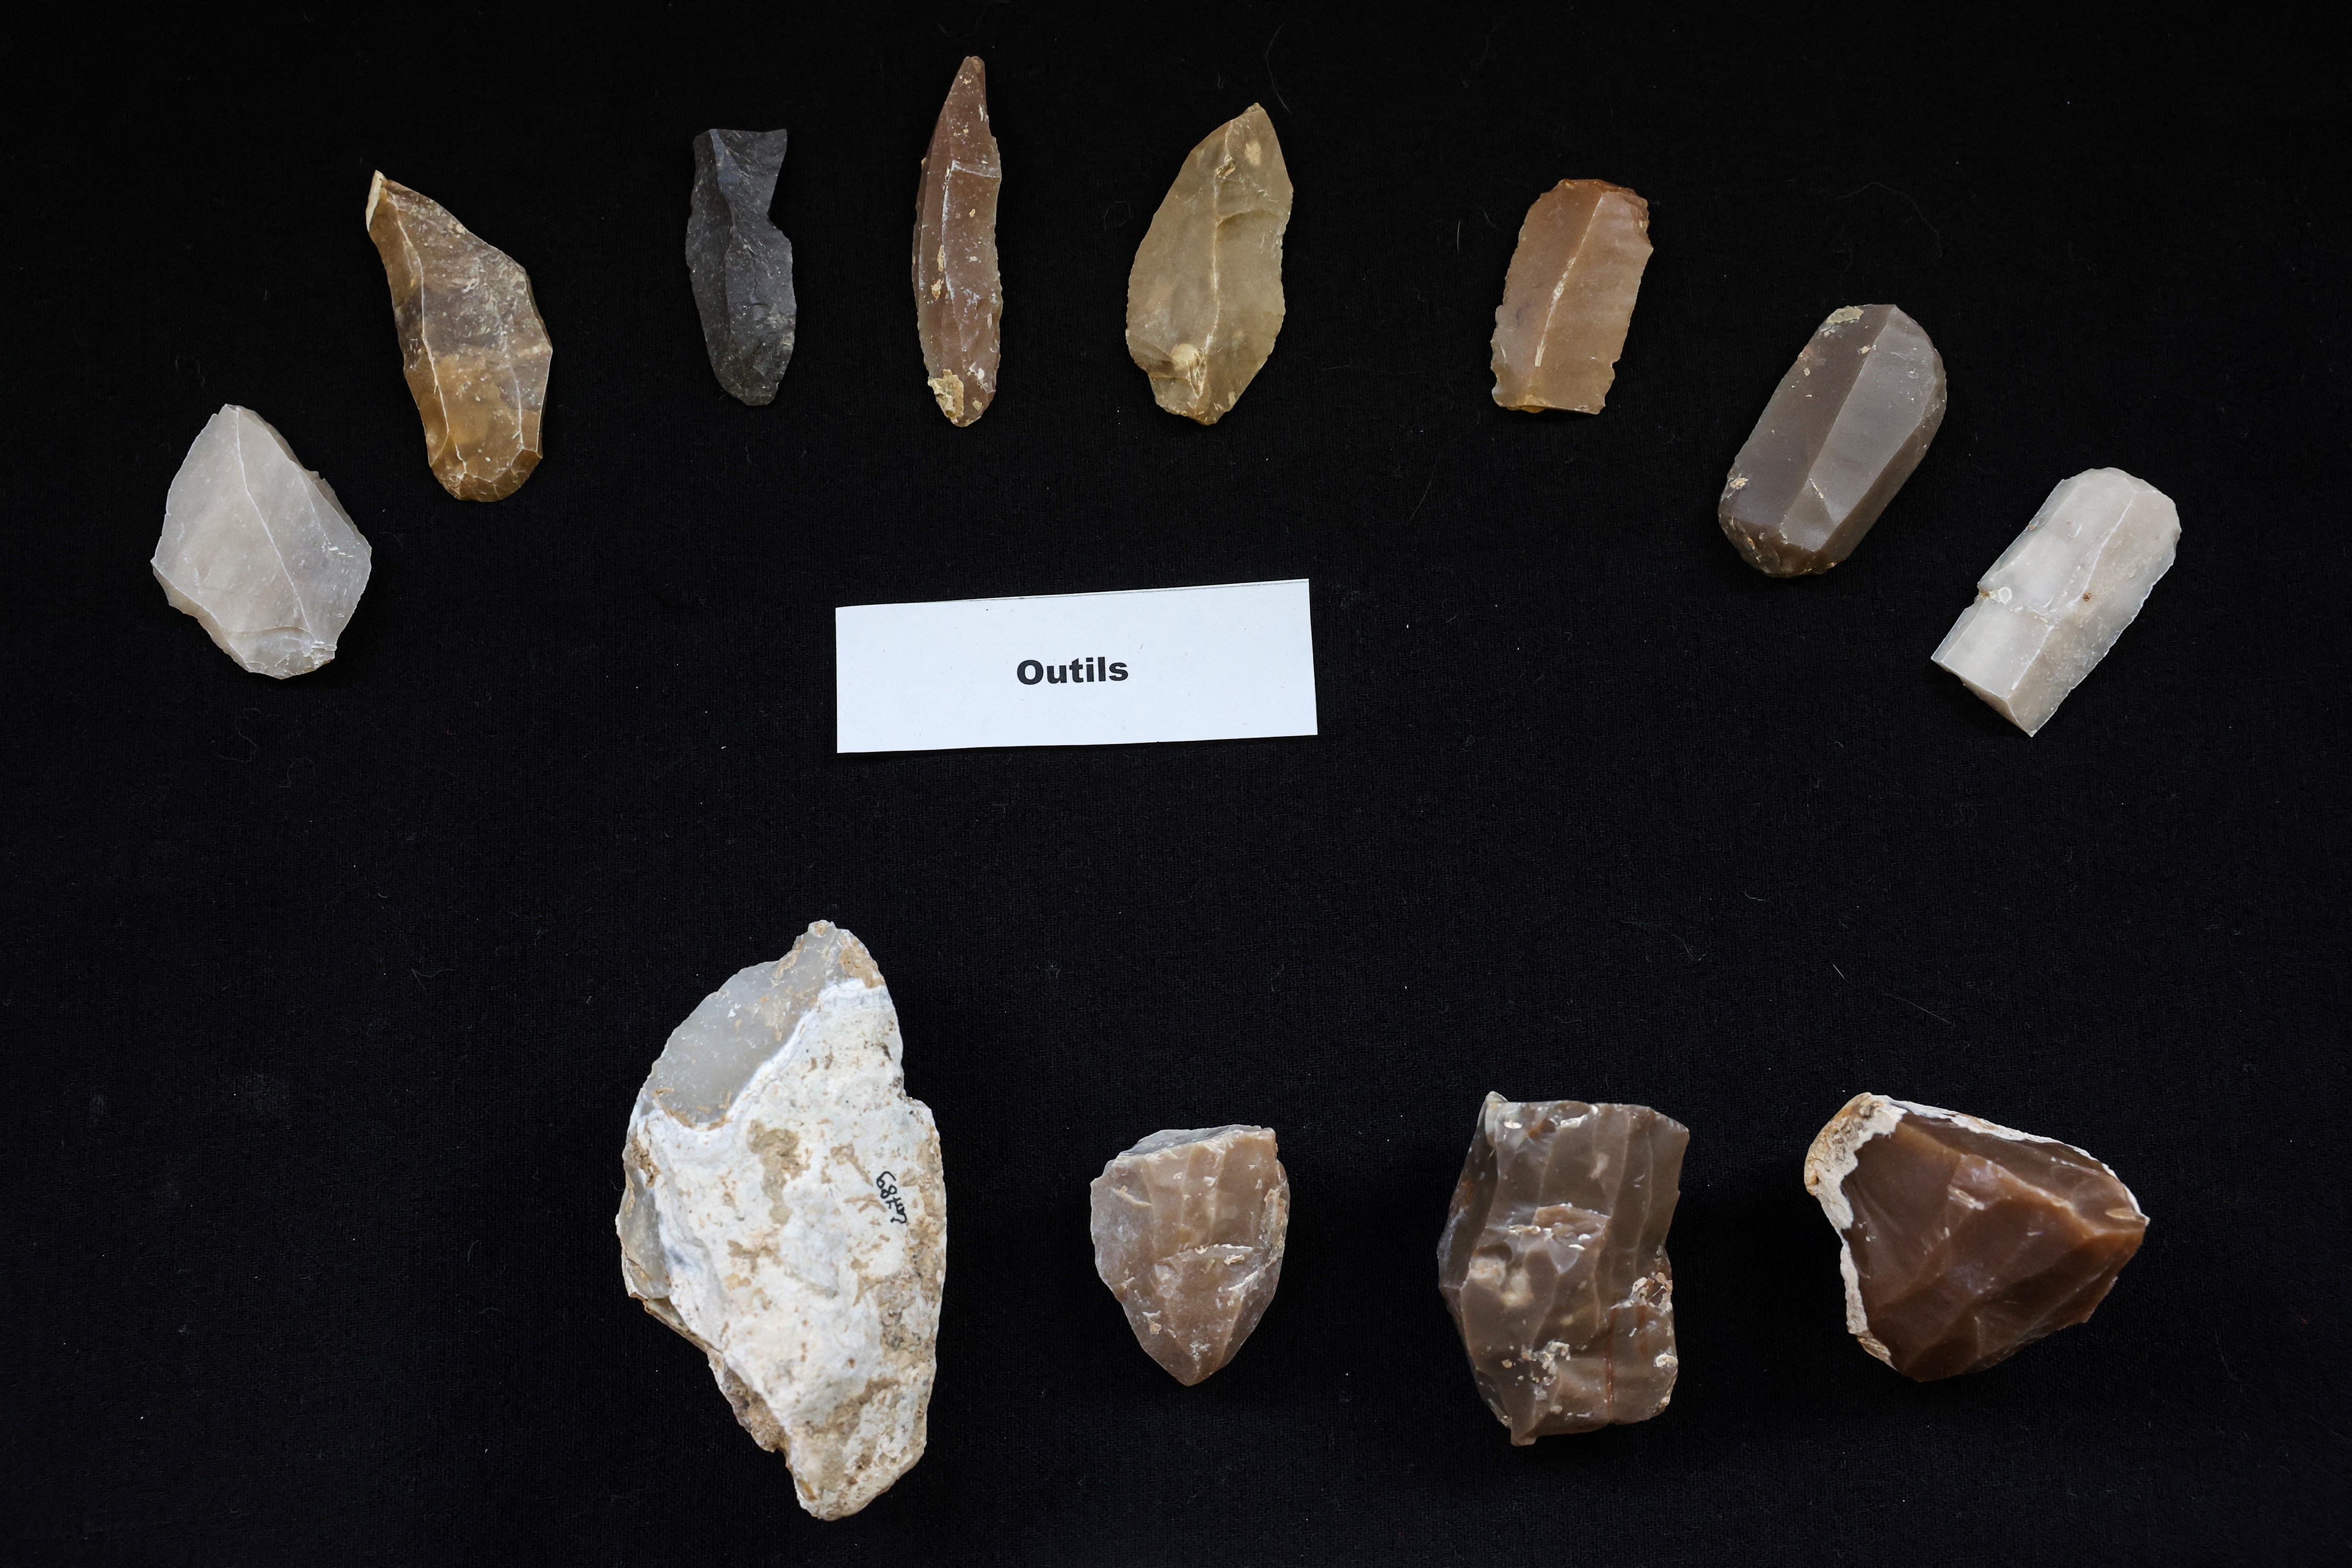 Elementos que datan del comienzo de la época de Magdelanian (-20,000 años) (Photo by Pascal GUYOT / AFP)